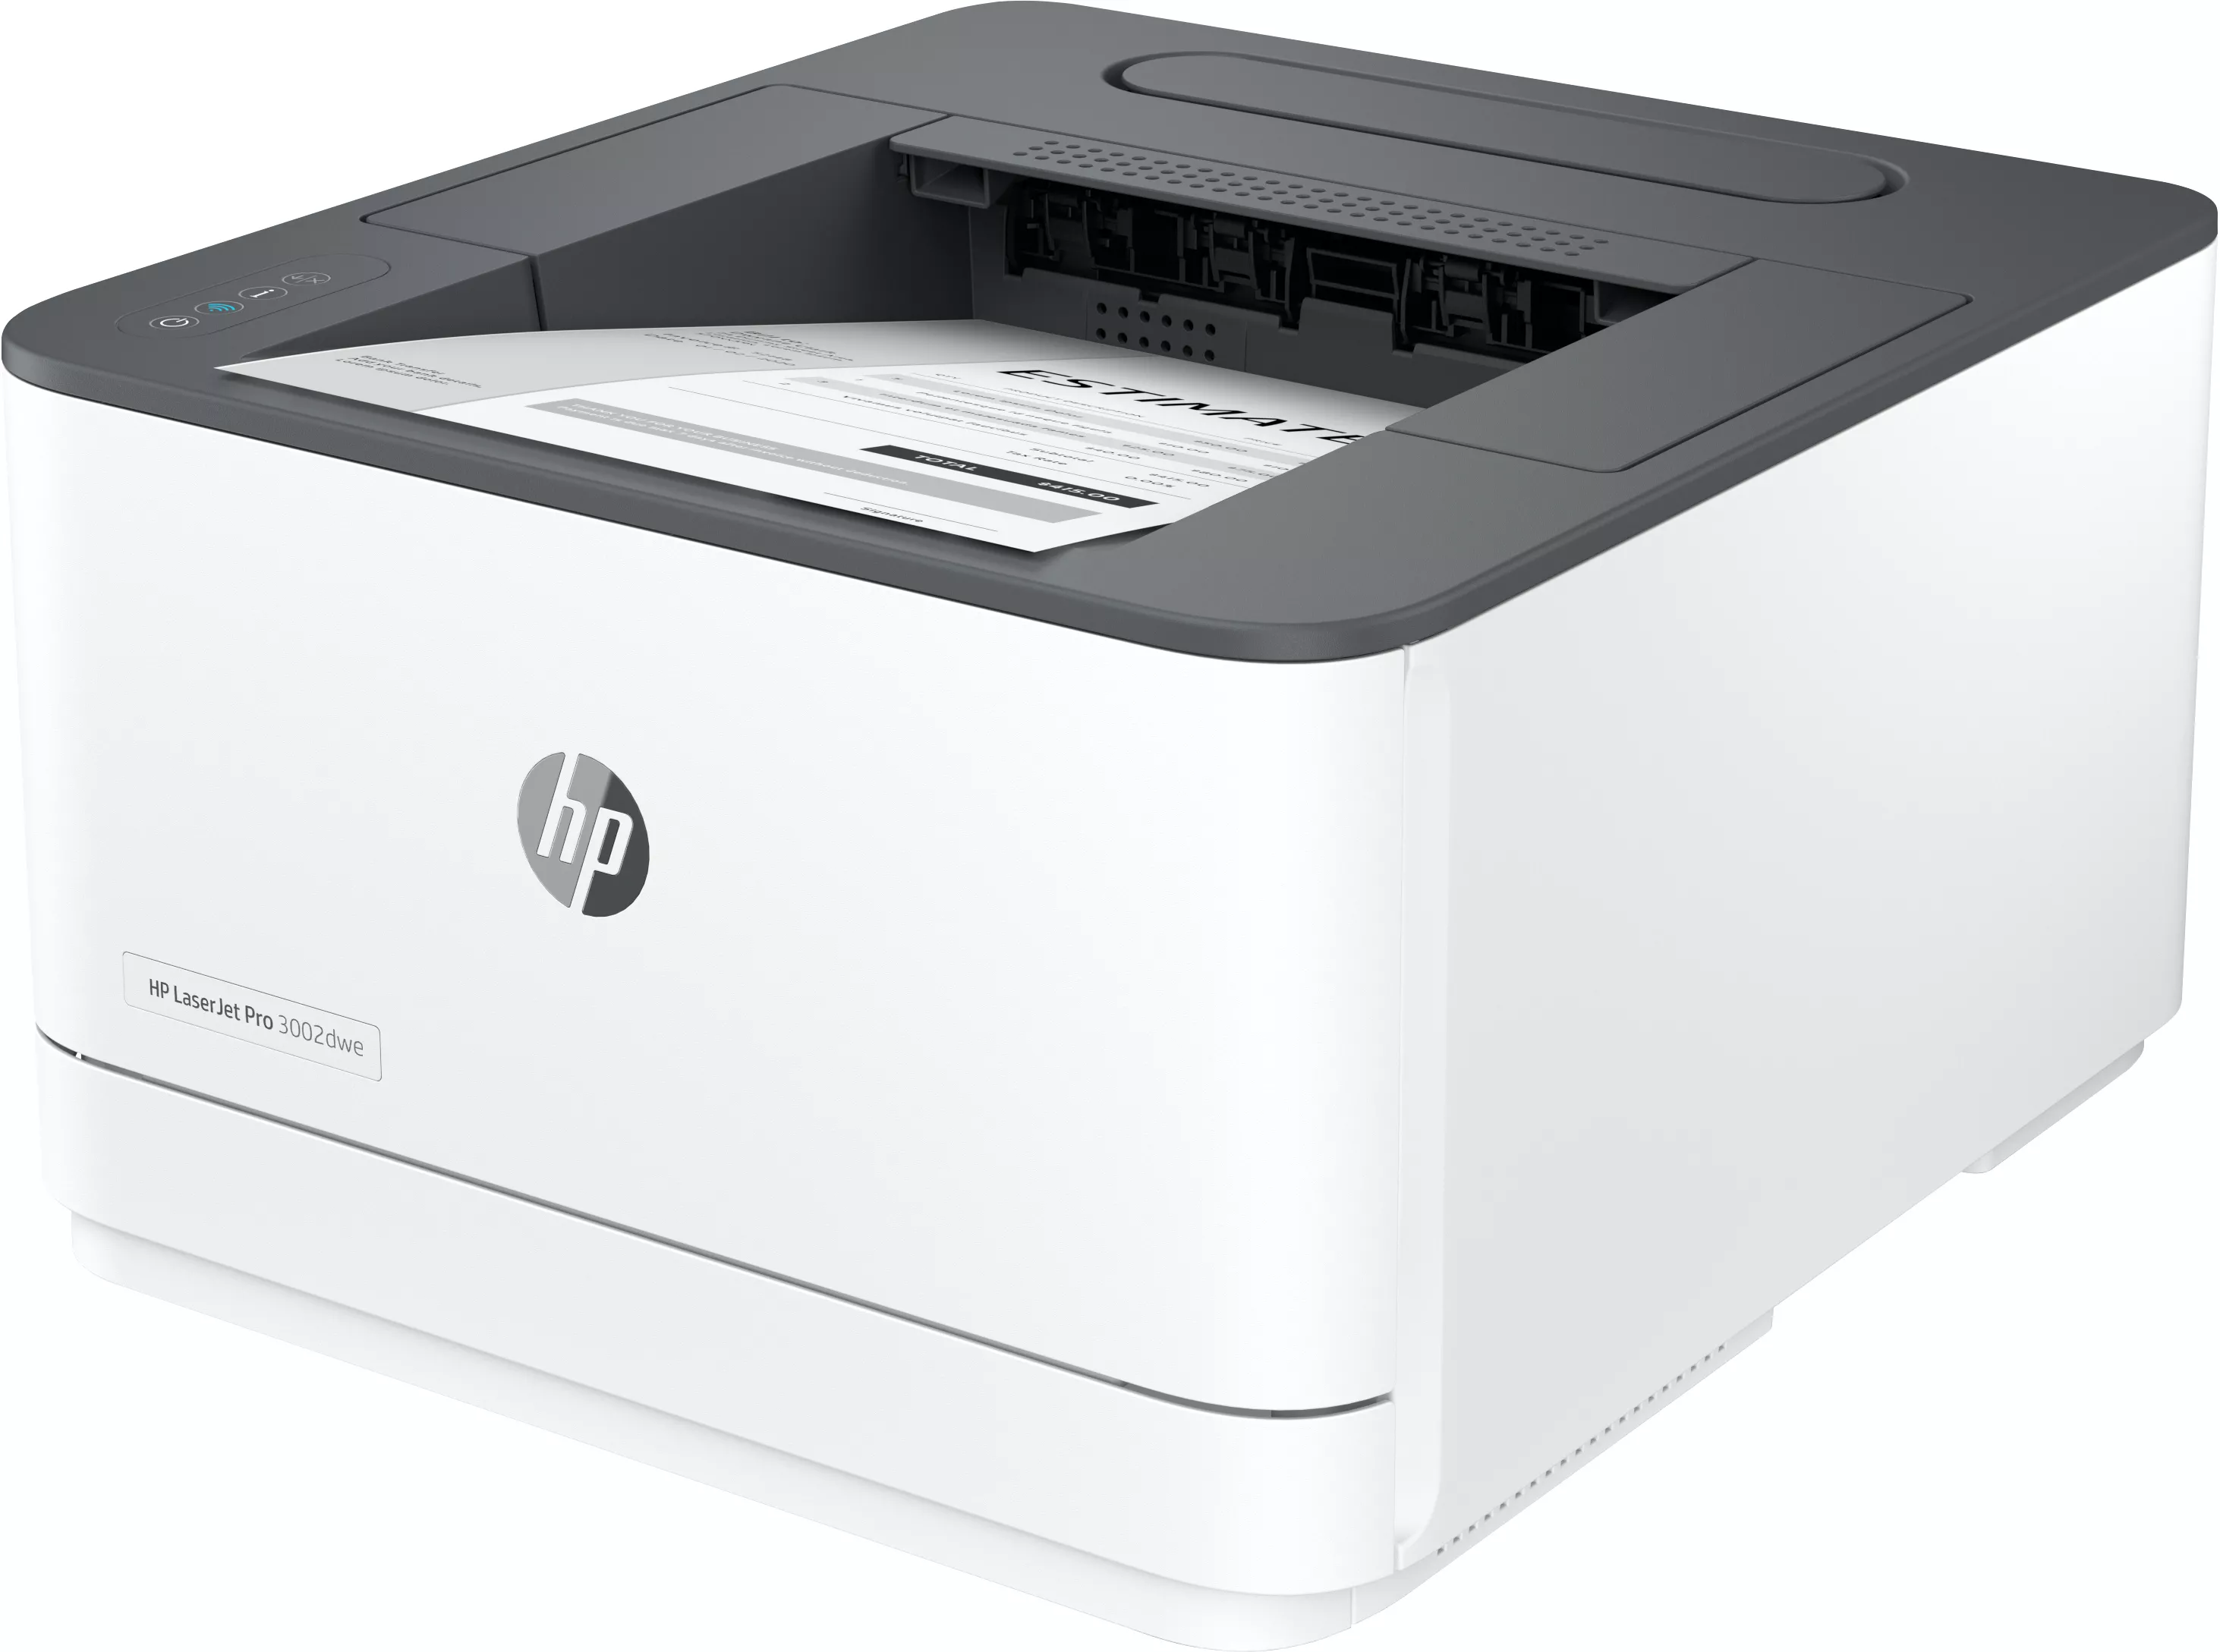 Vente HP LaserJet Pro 3002dwe 33ppm Printer HP au meilleur prix - visuel 2